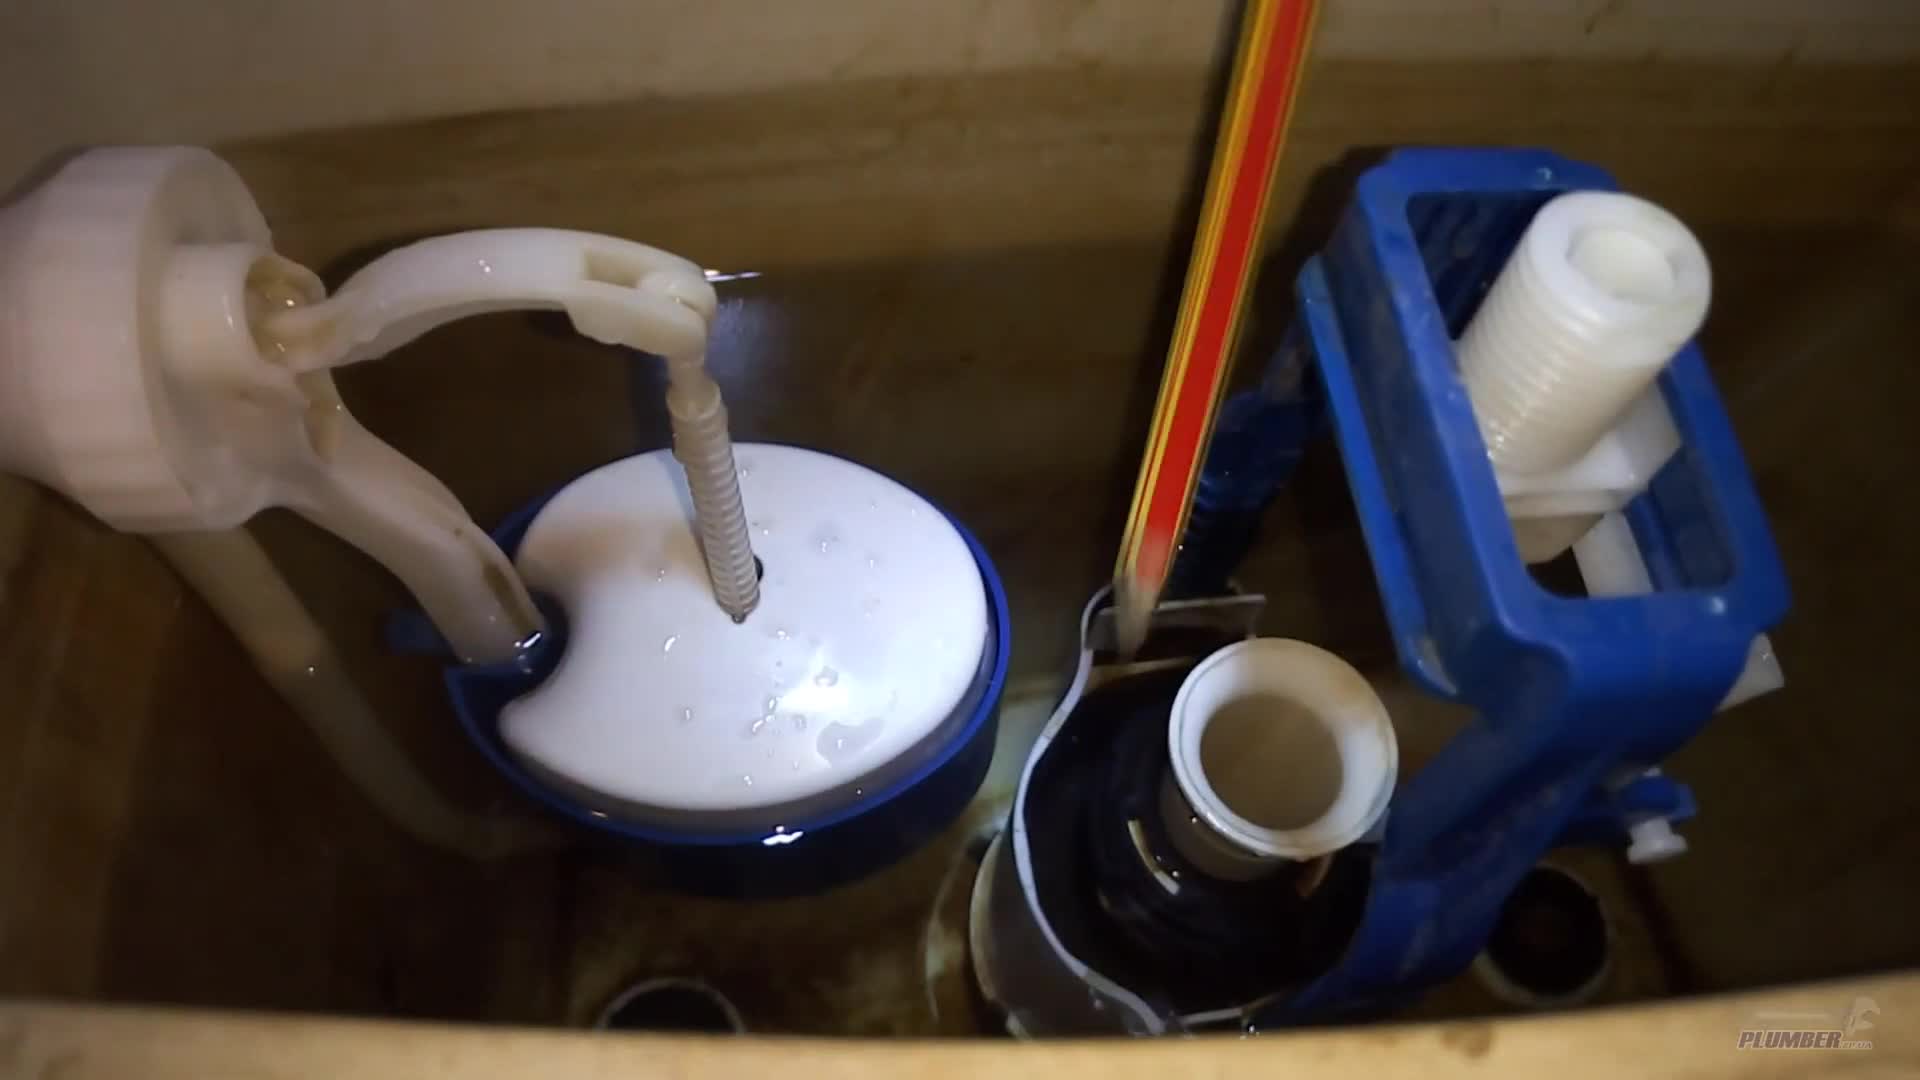 Как подключить бойлер к водопроводу – пошаговая инструкция